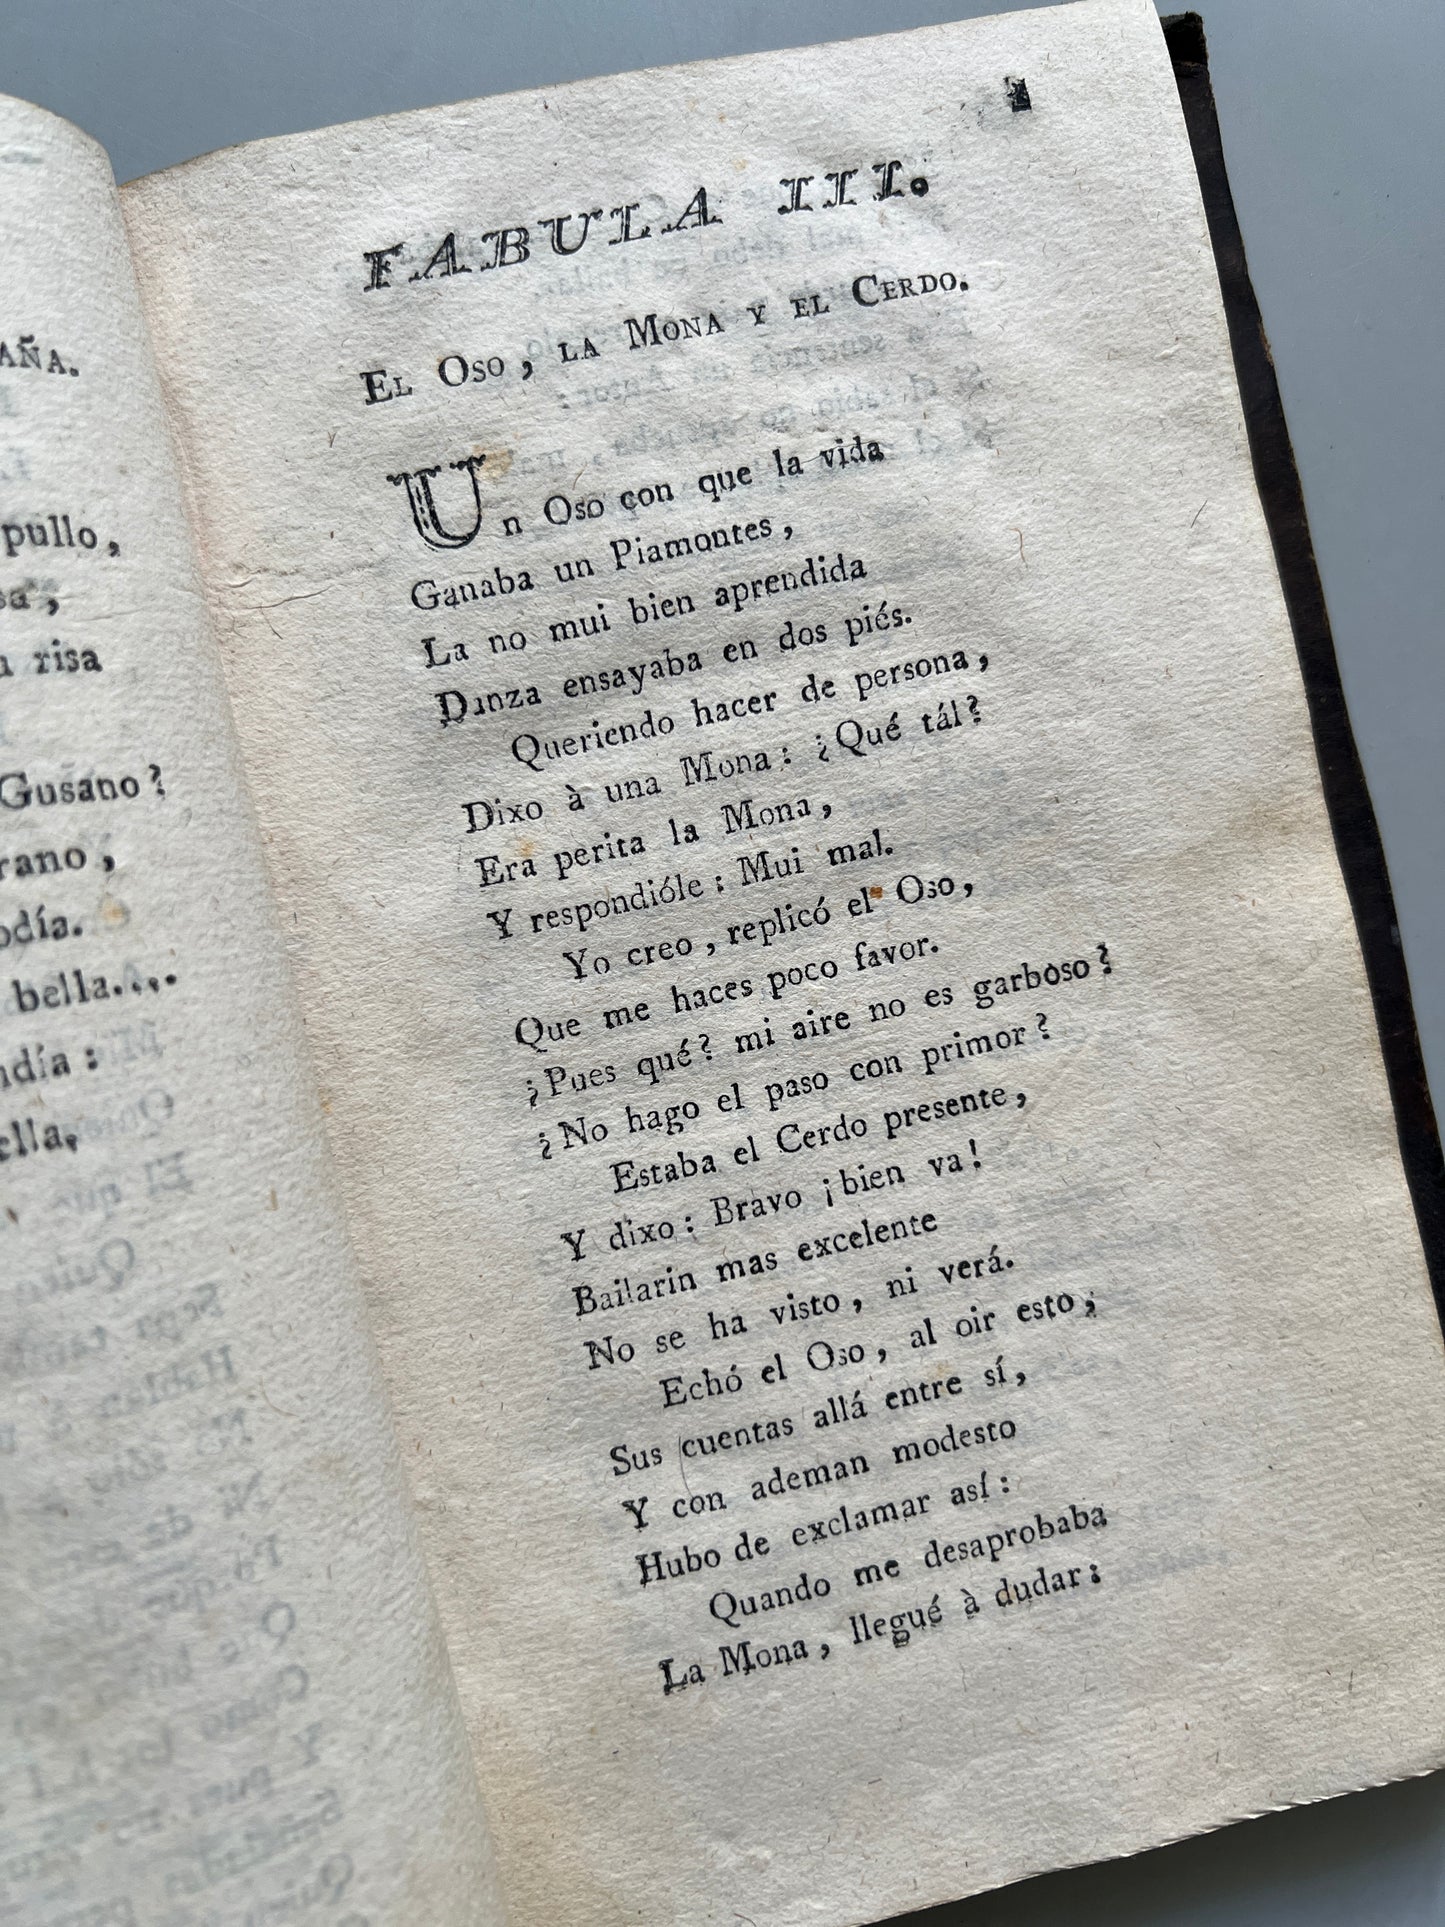 Fábulas literarias, Tomas de Yriarte - Imprenta de Eulalia Piferrer Viuda, 1782